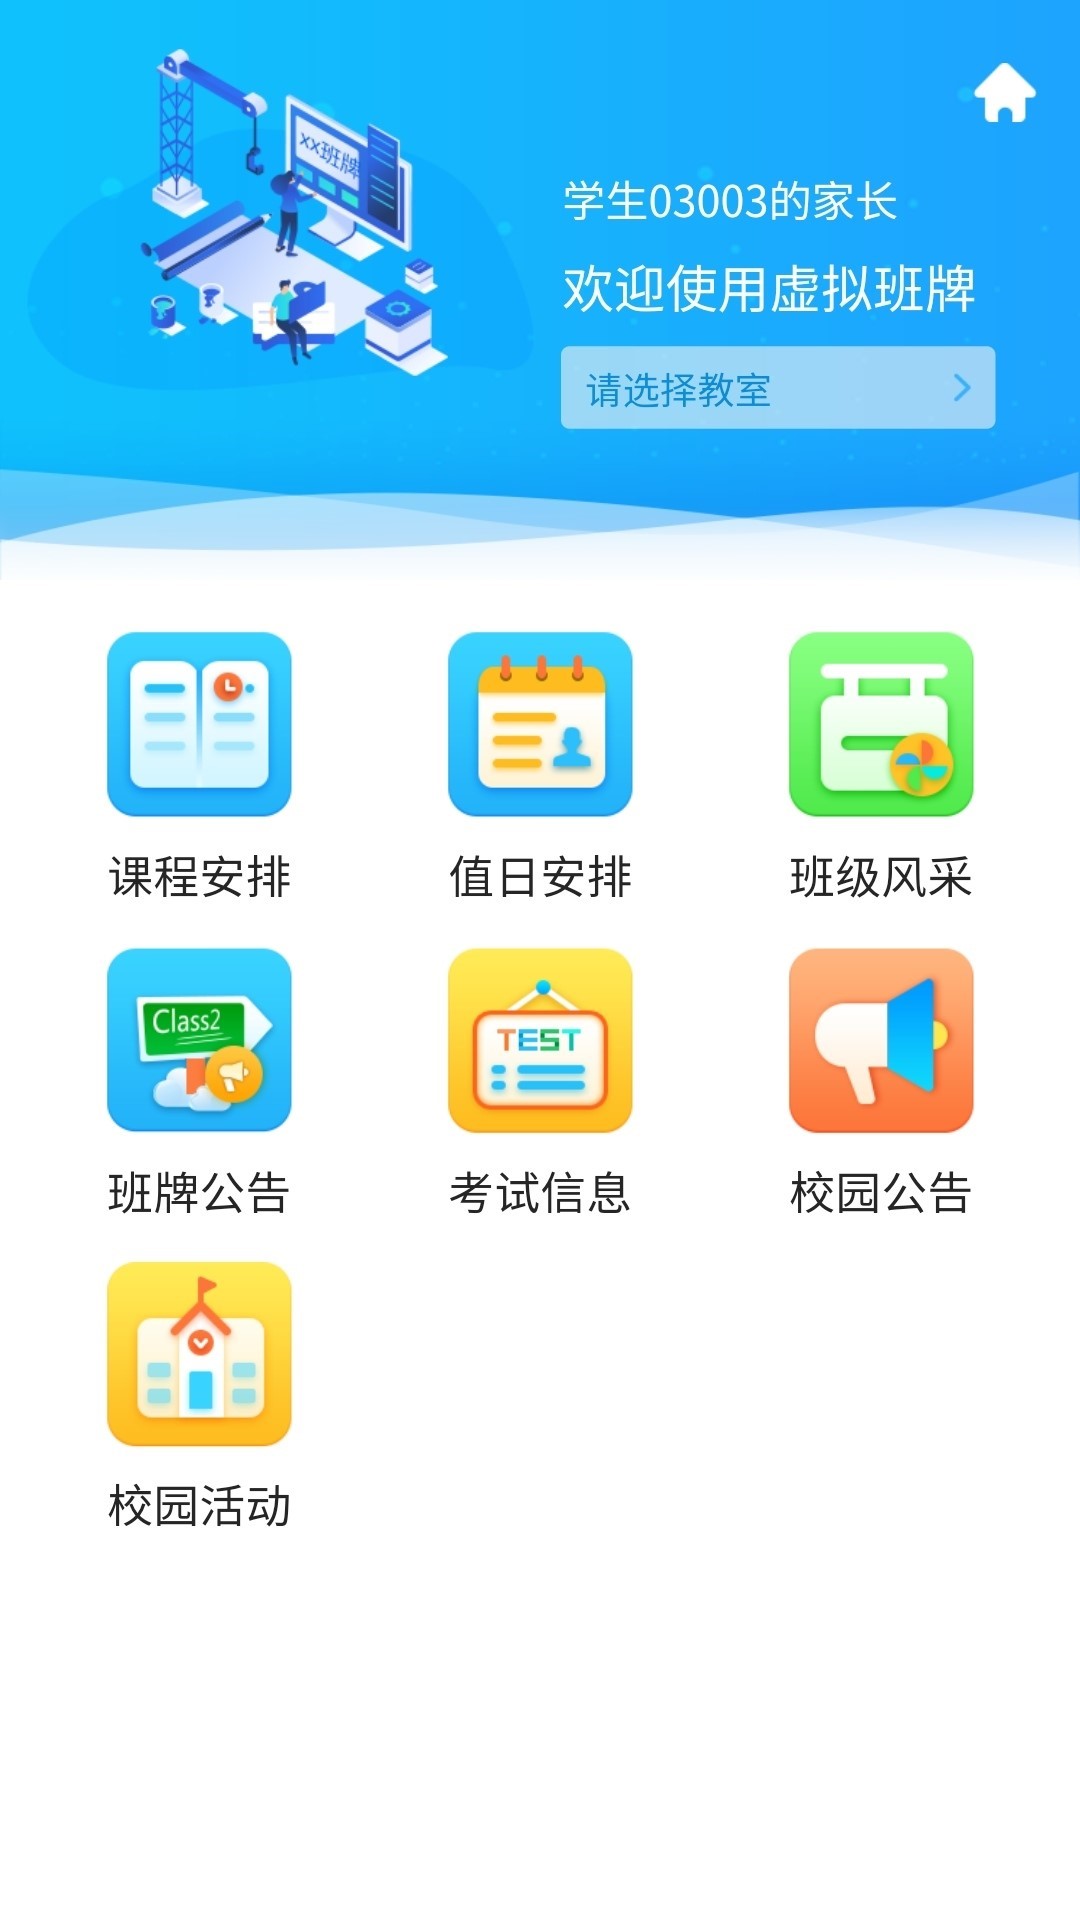 蓝鸽智慧校园通app 5.1.35.3.3